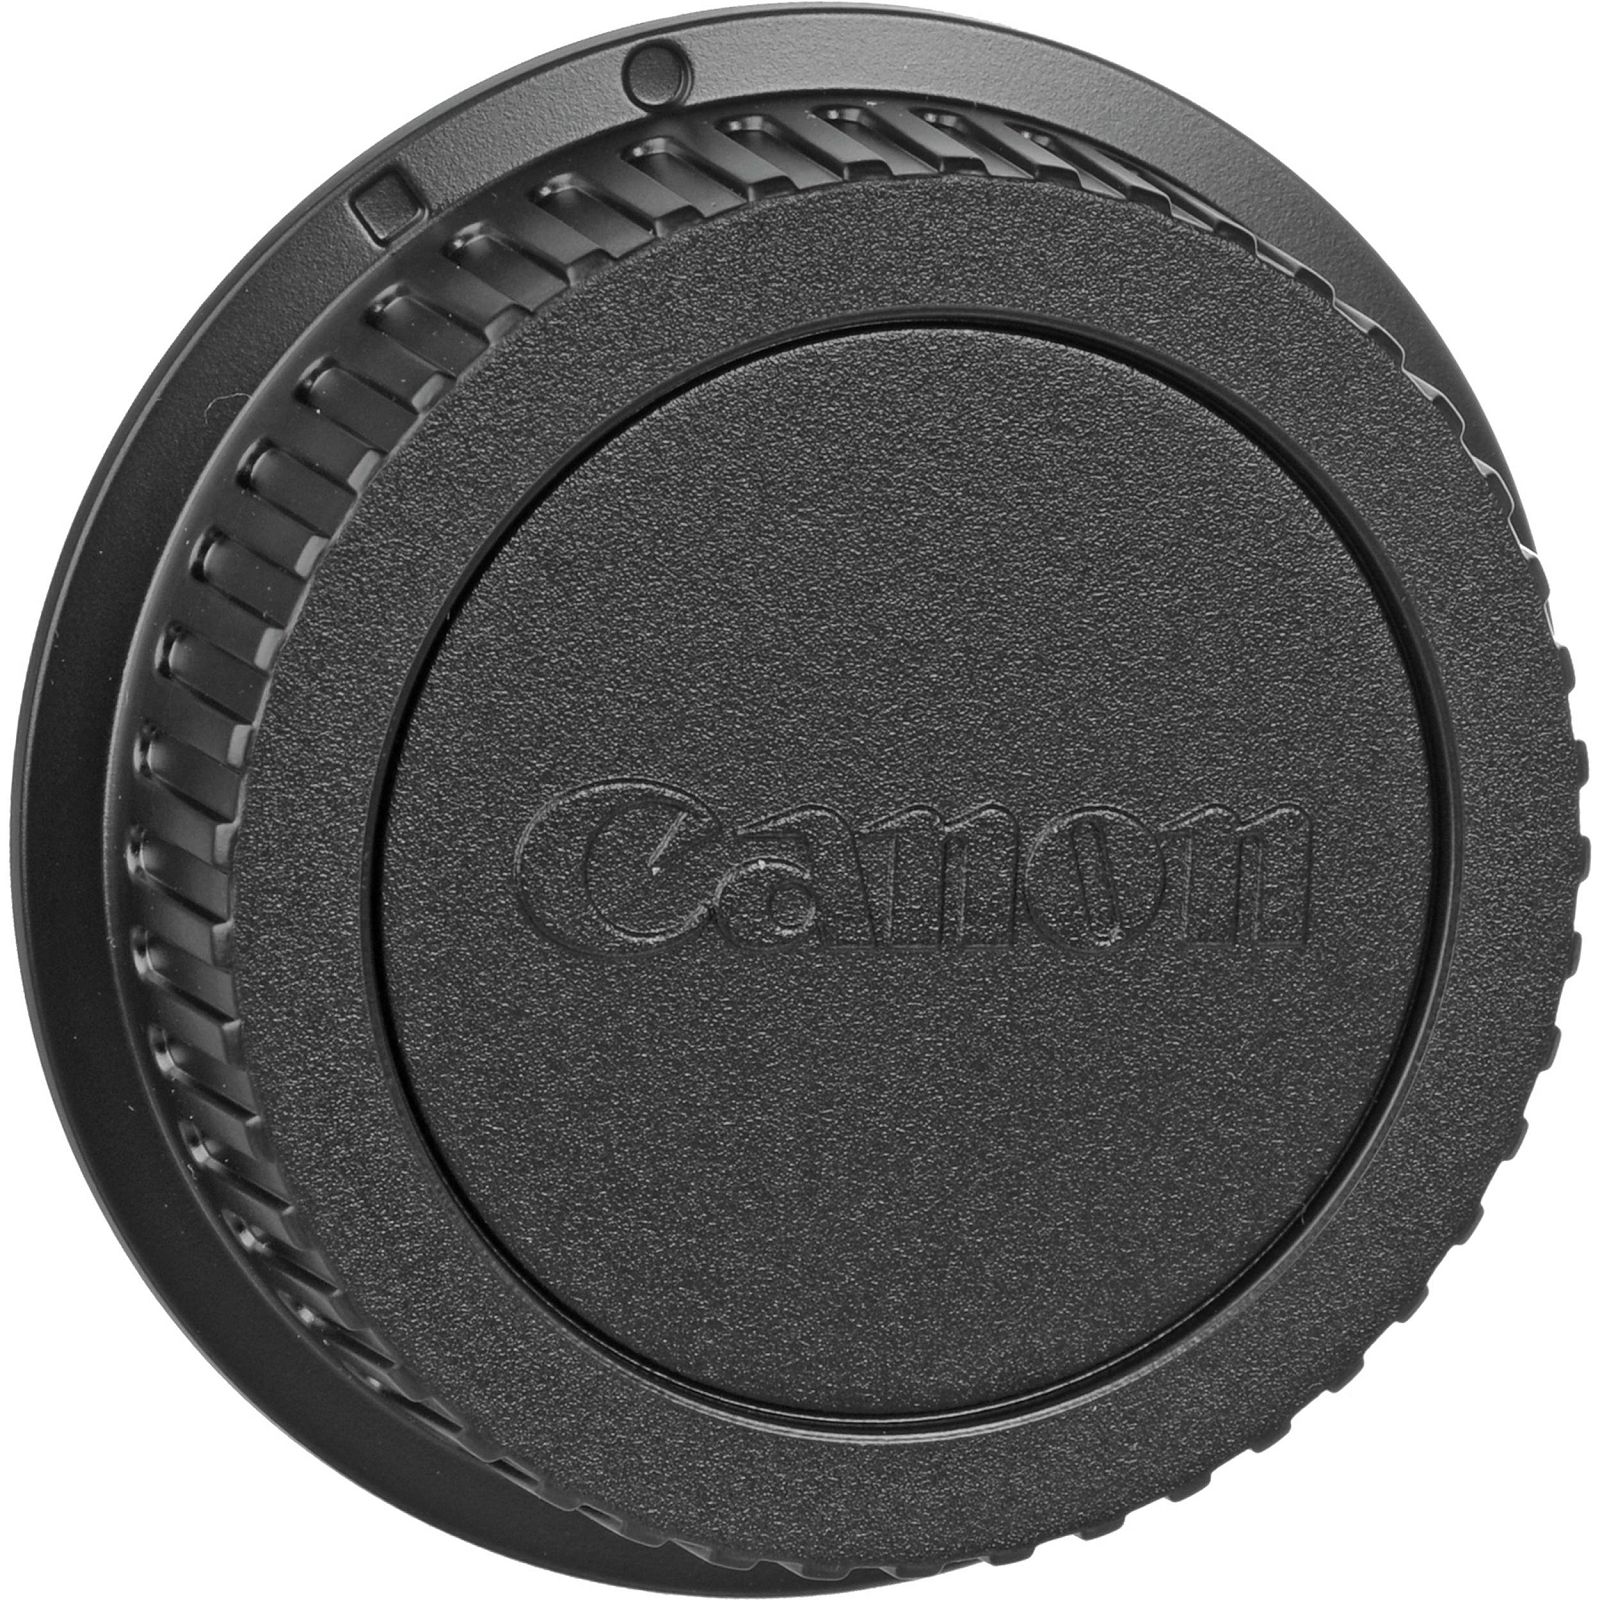 Canon EF 70-200mm f/4 L USM telefoto objektiv zoom lens 70-200 F4 4.0 1:4,0L f/4L F/4.0 (2578A009AA)